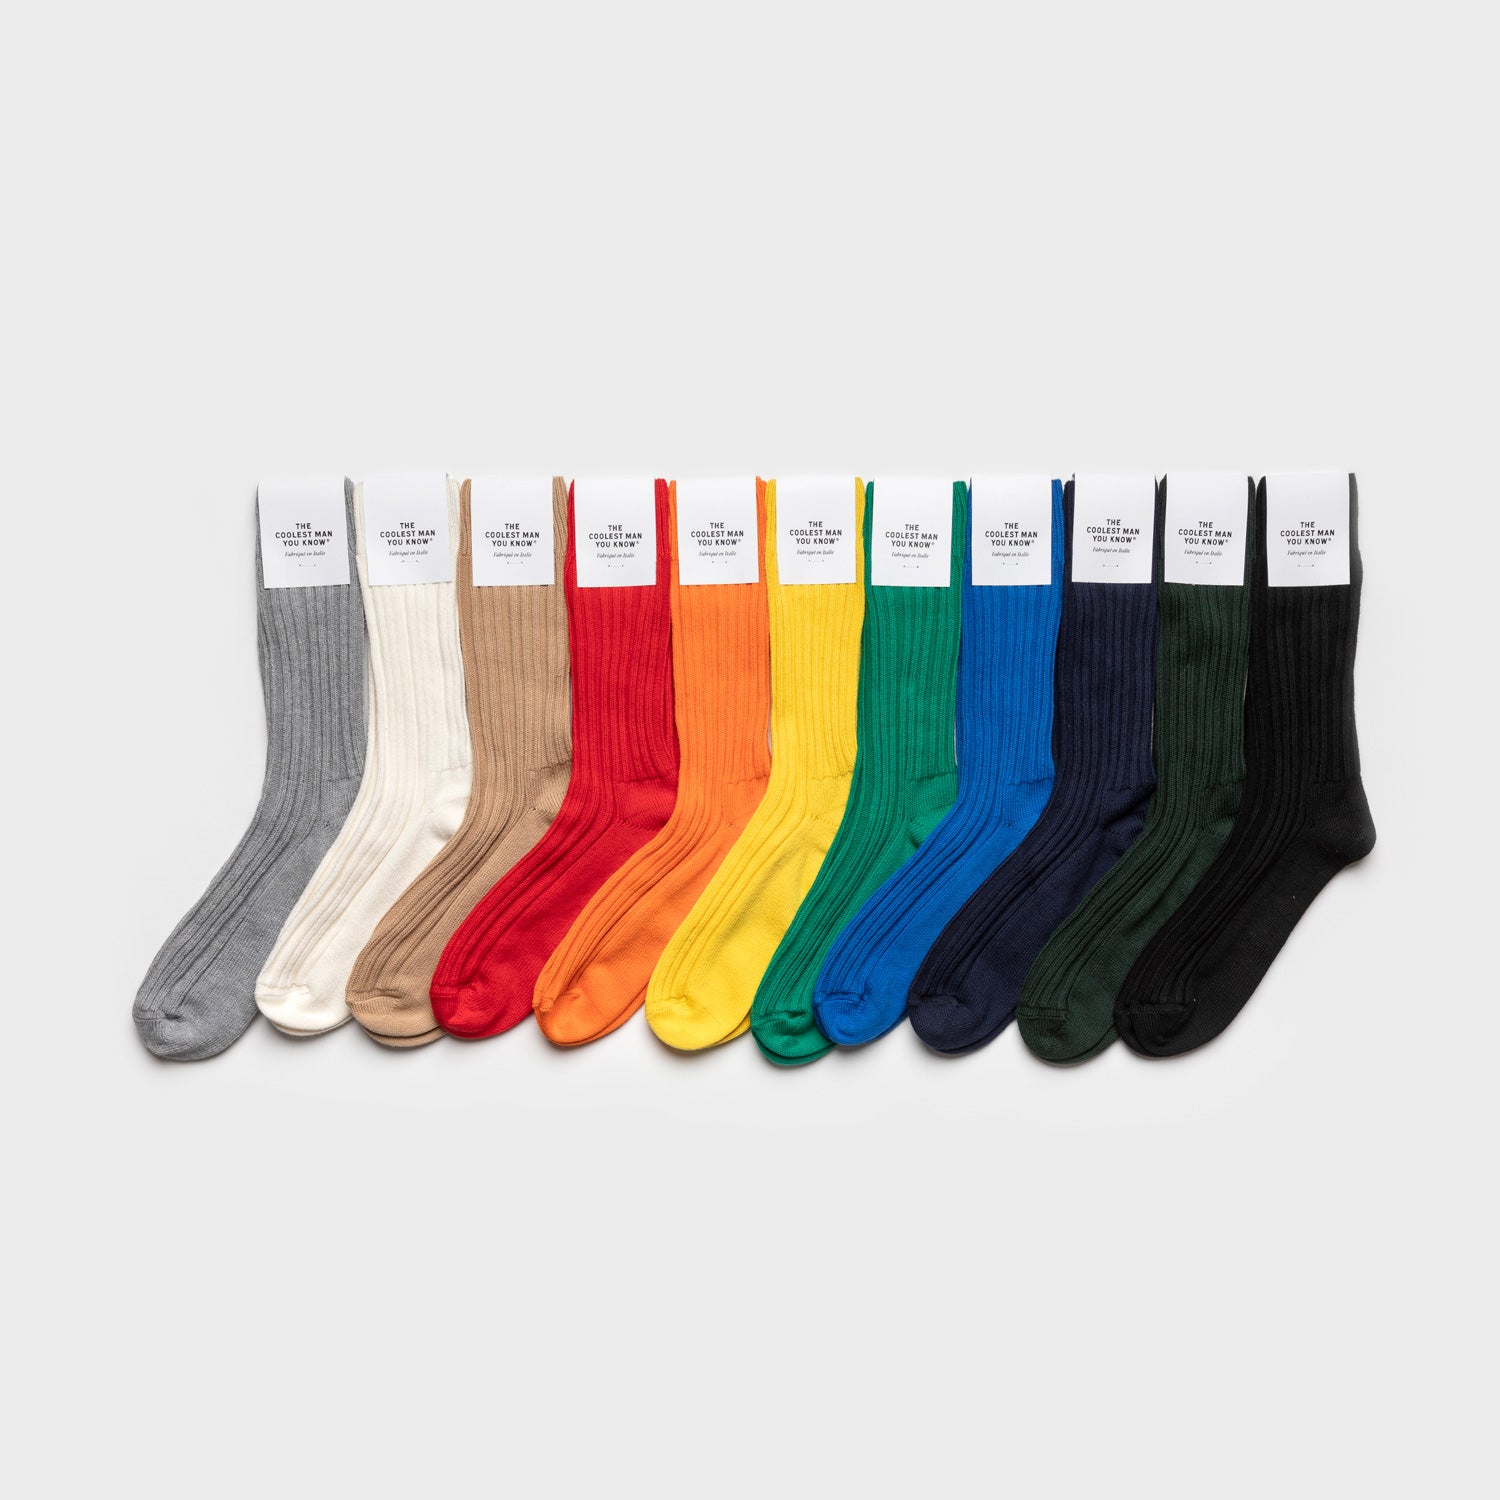 Αγορά Καθαρισμός νοικοκυριού  20PCS/LOT Colorful Sock Shaped Socks Holders  Pack of Organizers Sorters Clips Laundry